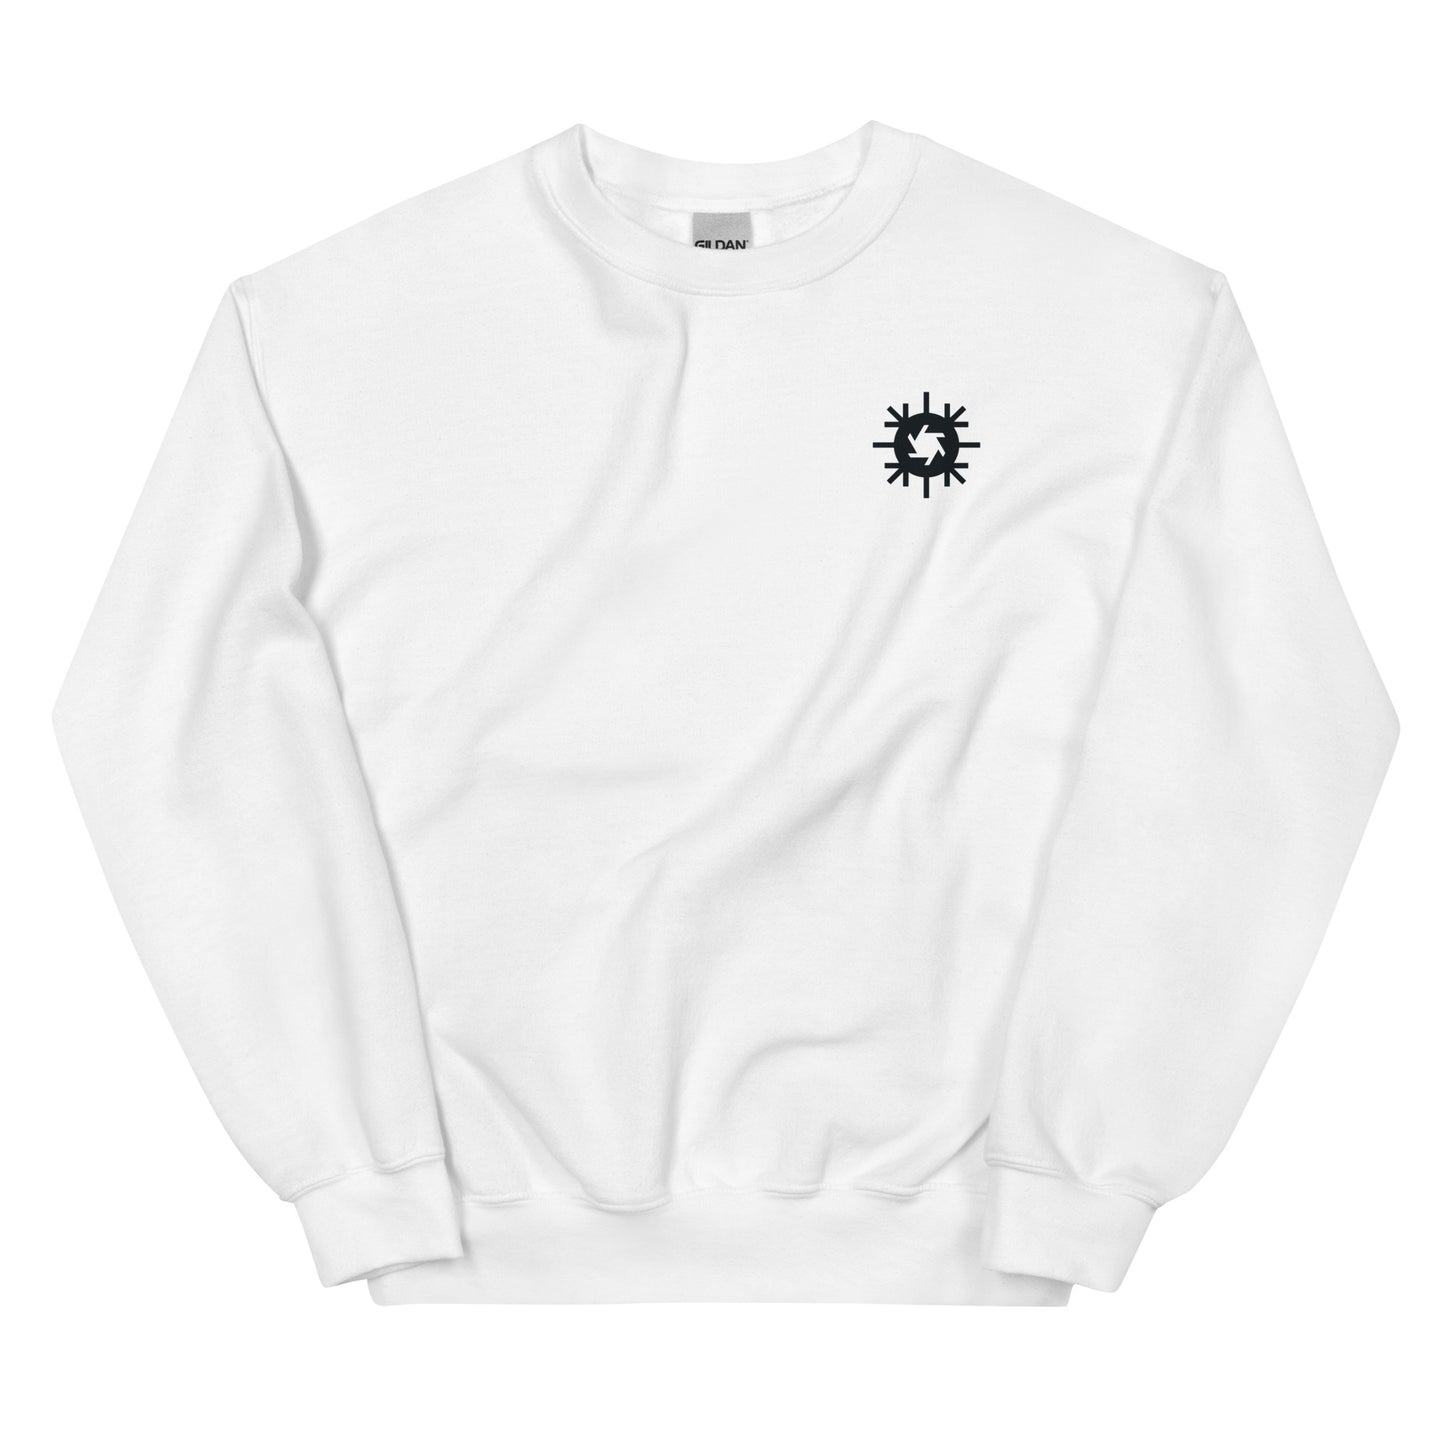 The Snowflake Sweatshirt